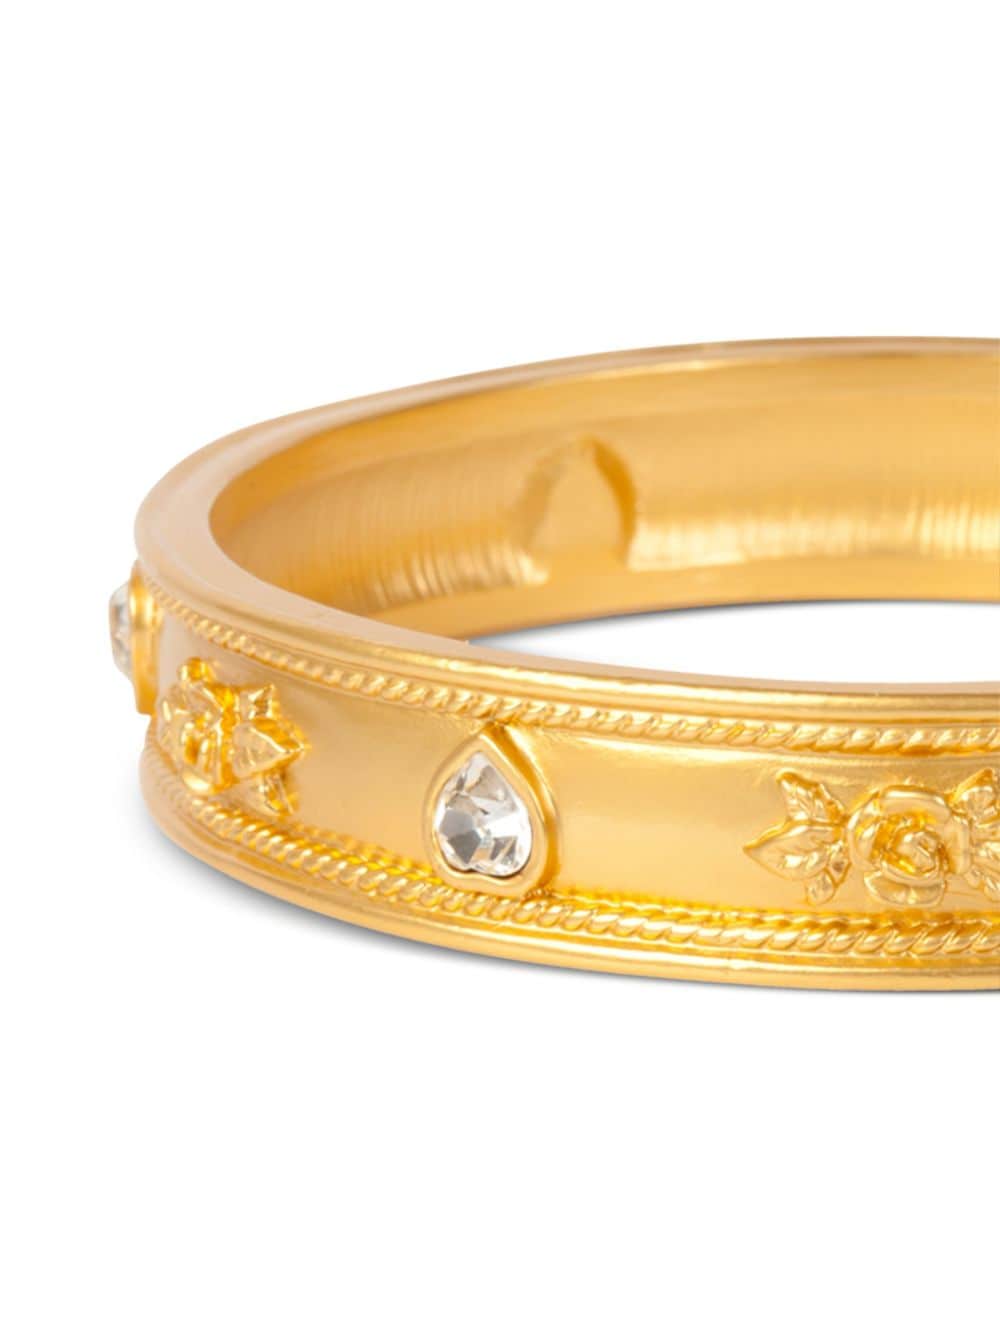 Pre-owned Susan Caplan Vintage 1990s Elizabeth Taylor Bangle Bracelet In Gold